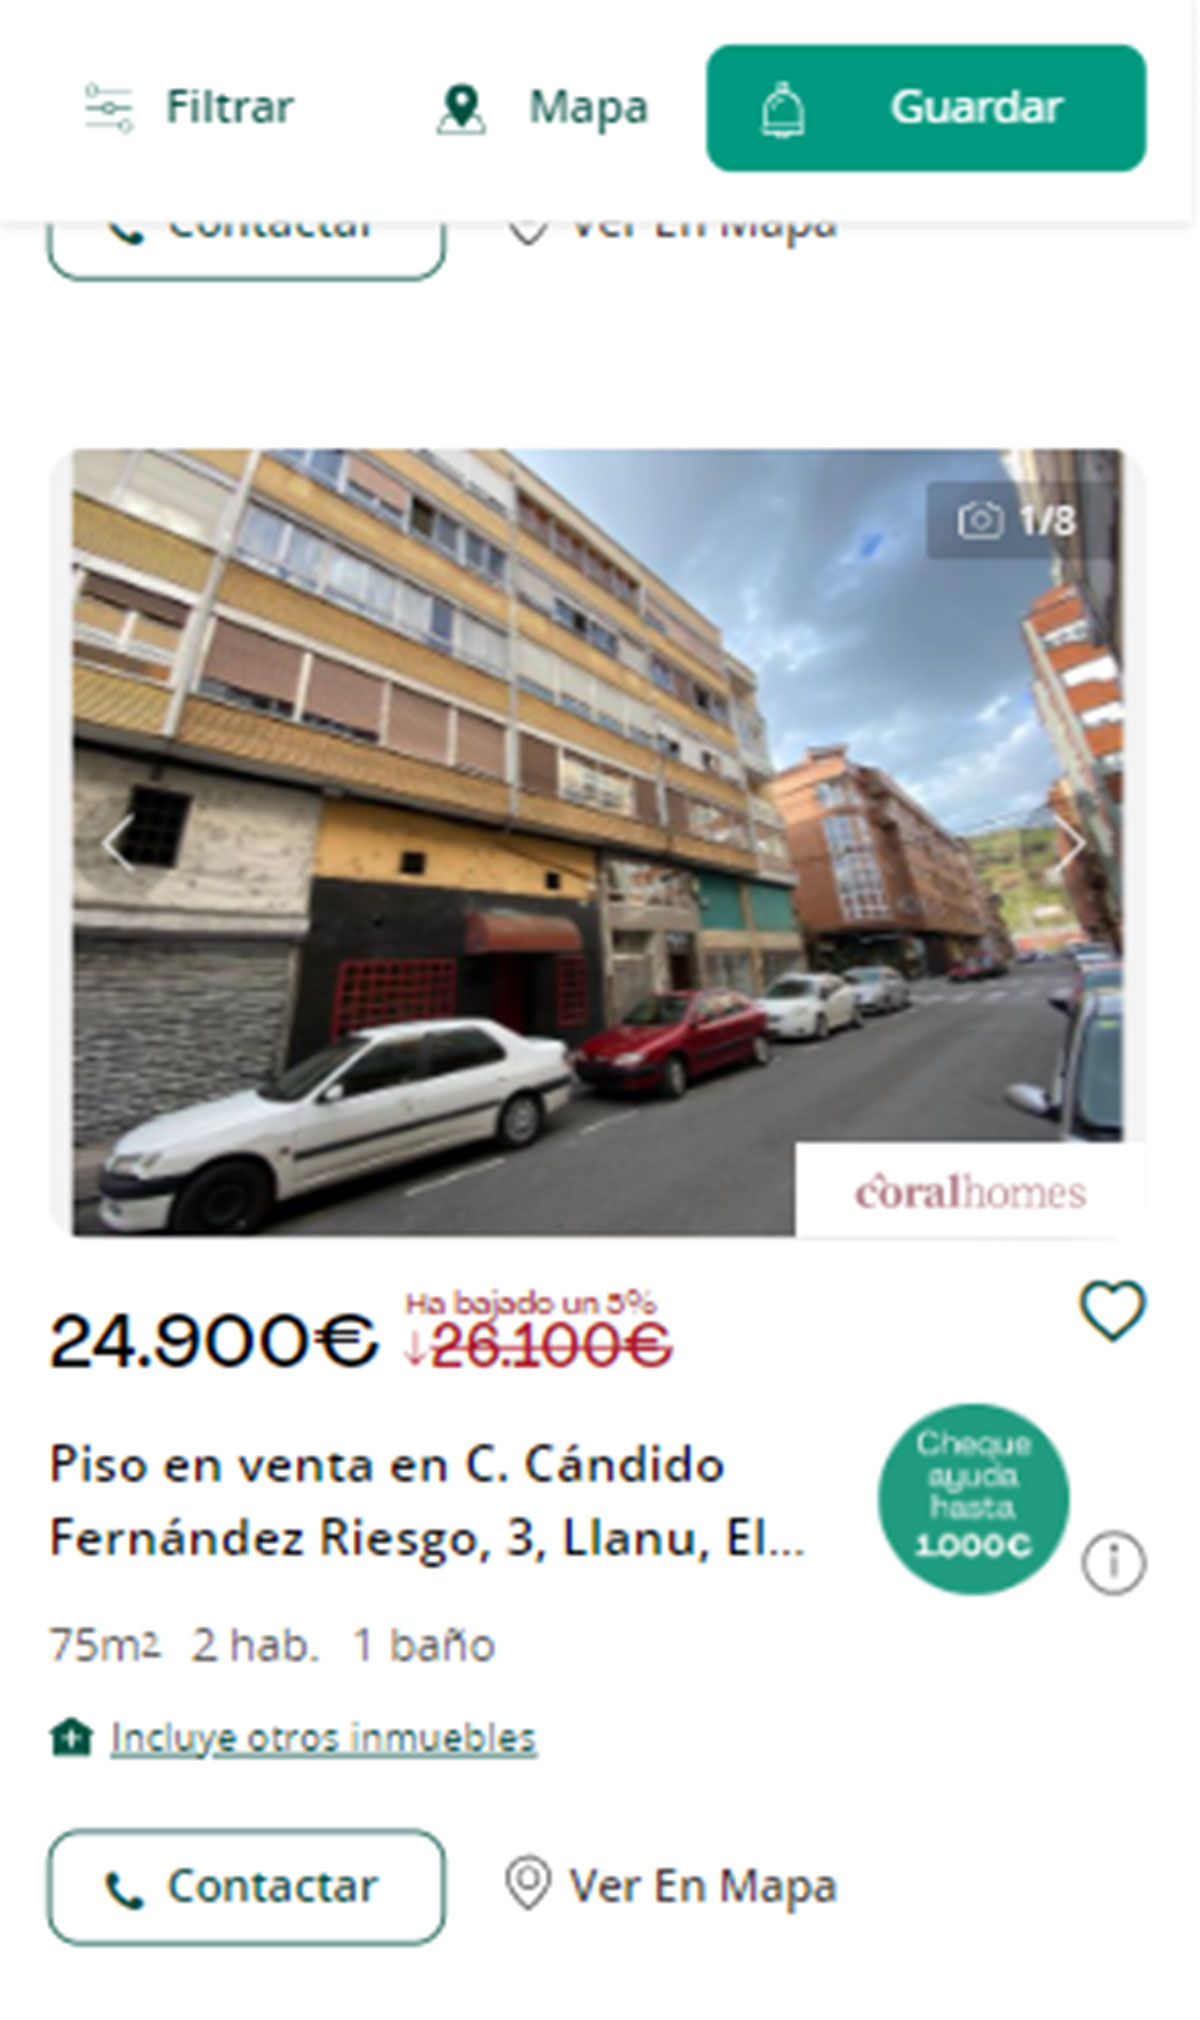 Piso en Asturias por 24.900 euros